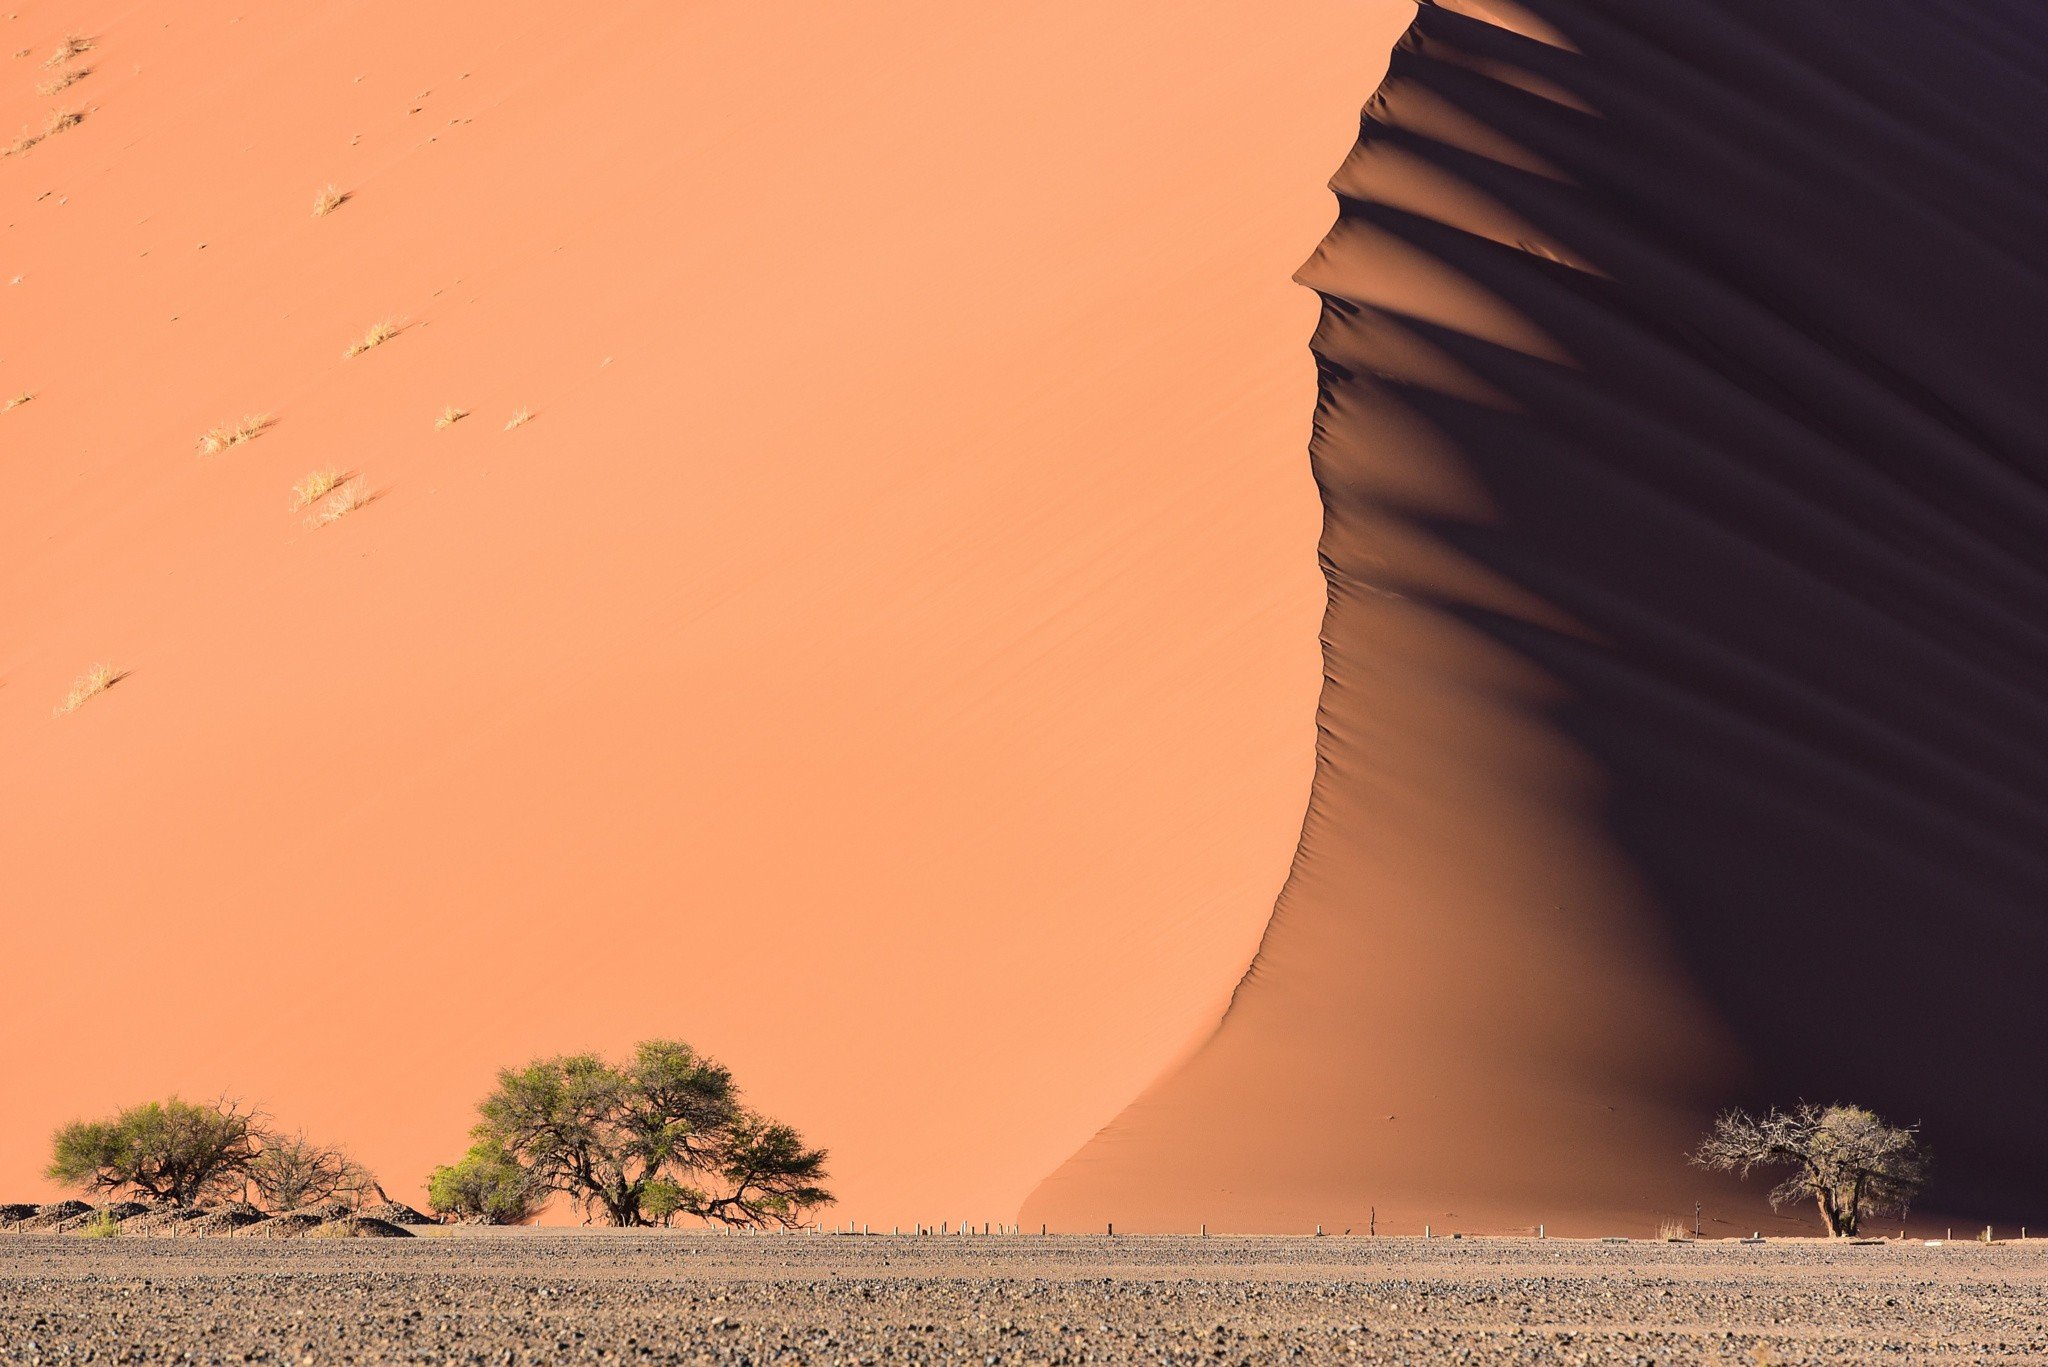 desert, Sand, Dune Wallpaper